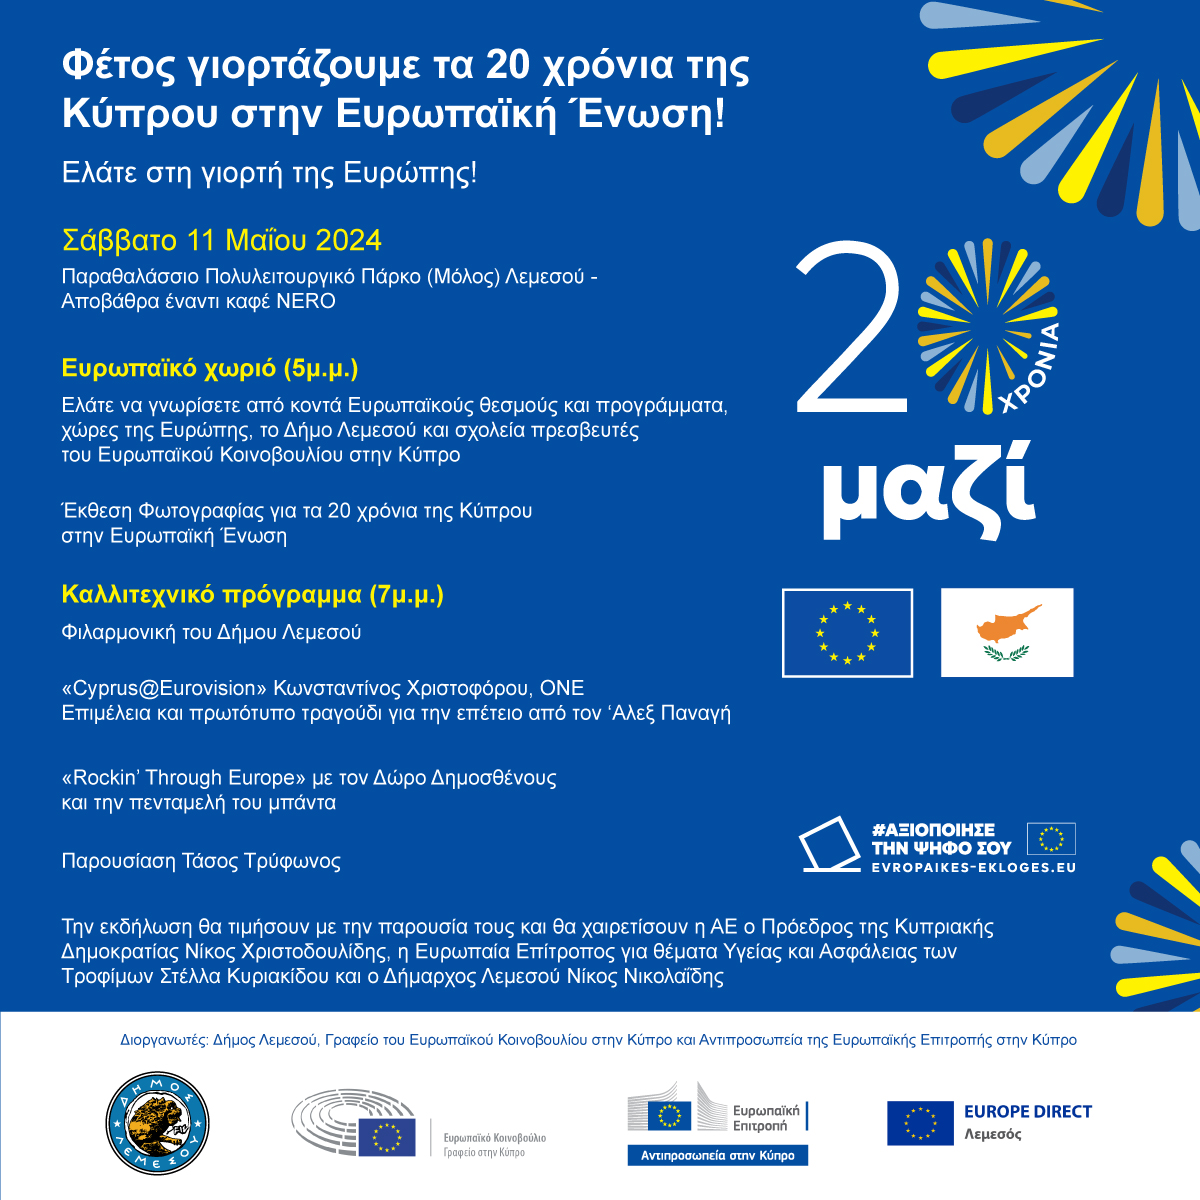 🎉 Ελάτε να γιορτάσουμε την Ημέρα της Ευρώπης και τα 20 χρόνια από την ένταξη της Κύπρου στην Ευρωπαϊκή Ένωση! 🇪🇺 Σάββατο 11 Μαΐου 2024 από 17:00 στο Παραθαλάσσιο Πολυλειτουργικό Πάρκο (Μόλος) Λεμεσού.